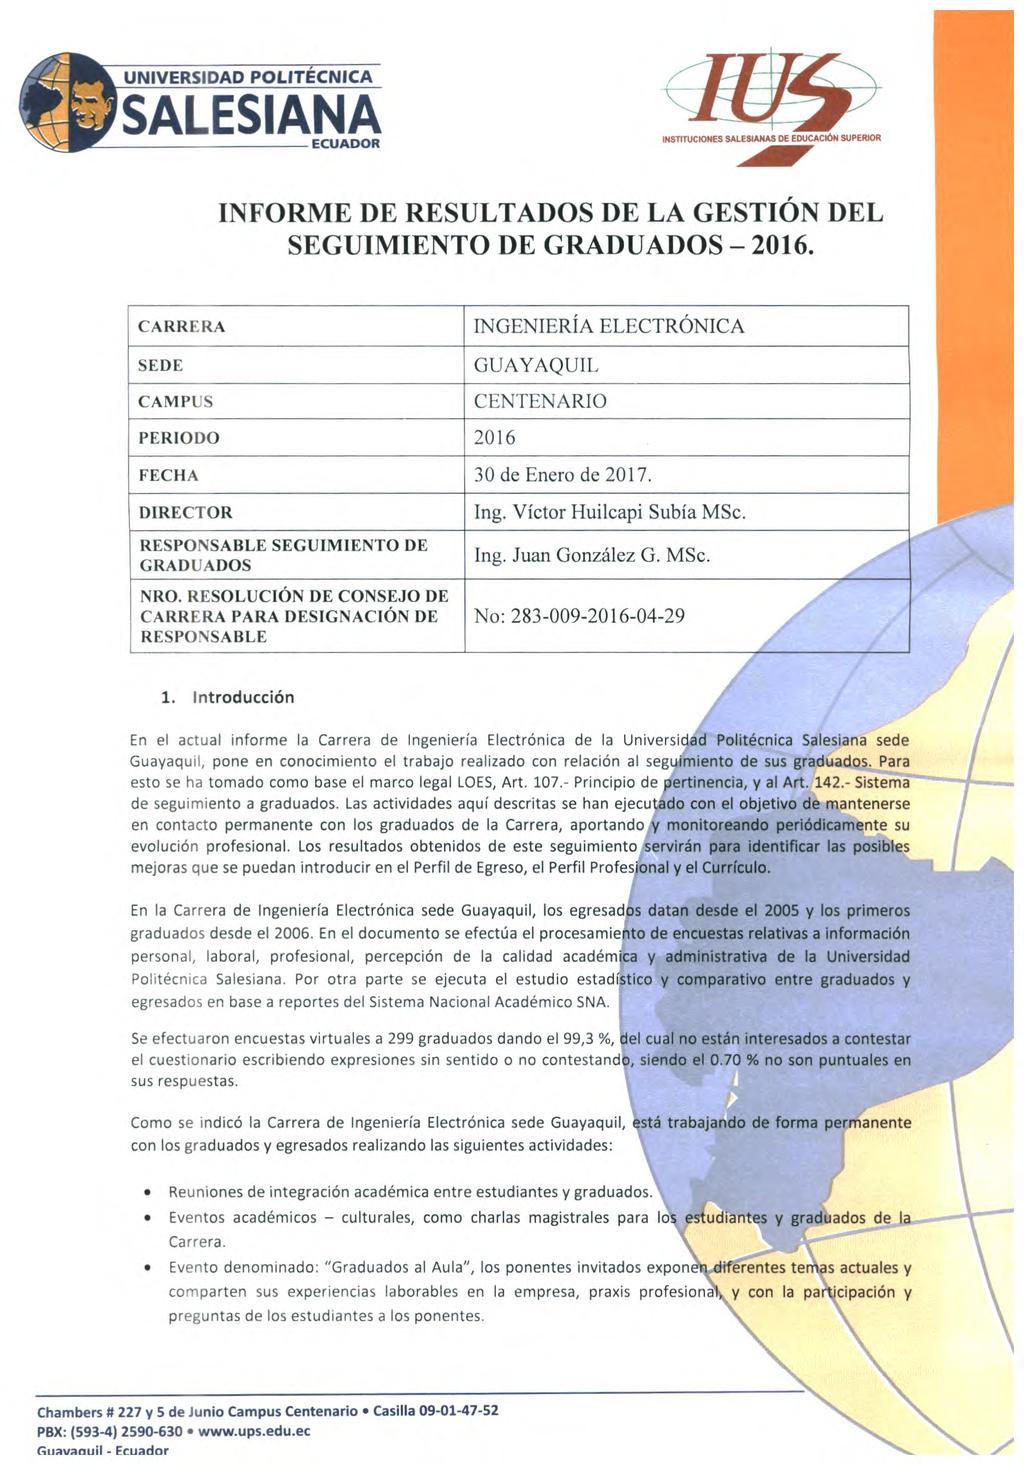 UNIVERSIDAD POLITECNICA INSTITUCIONES S DE EDUCACIÓN SUPERIOR INFORME DE RESULTADOS DE LA GESTIÓN DEL SEGUIMIENTO DE GRADUADOS - 2016.